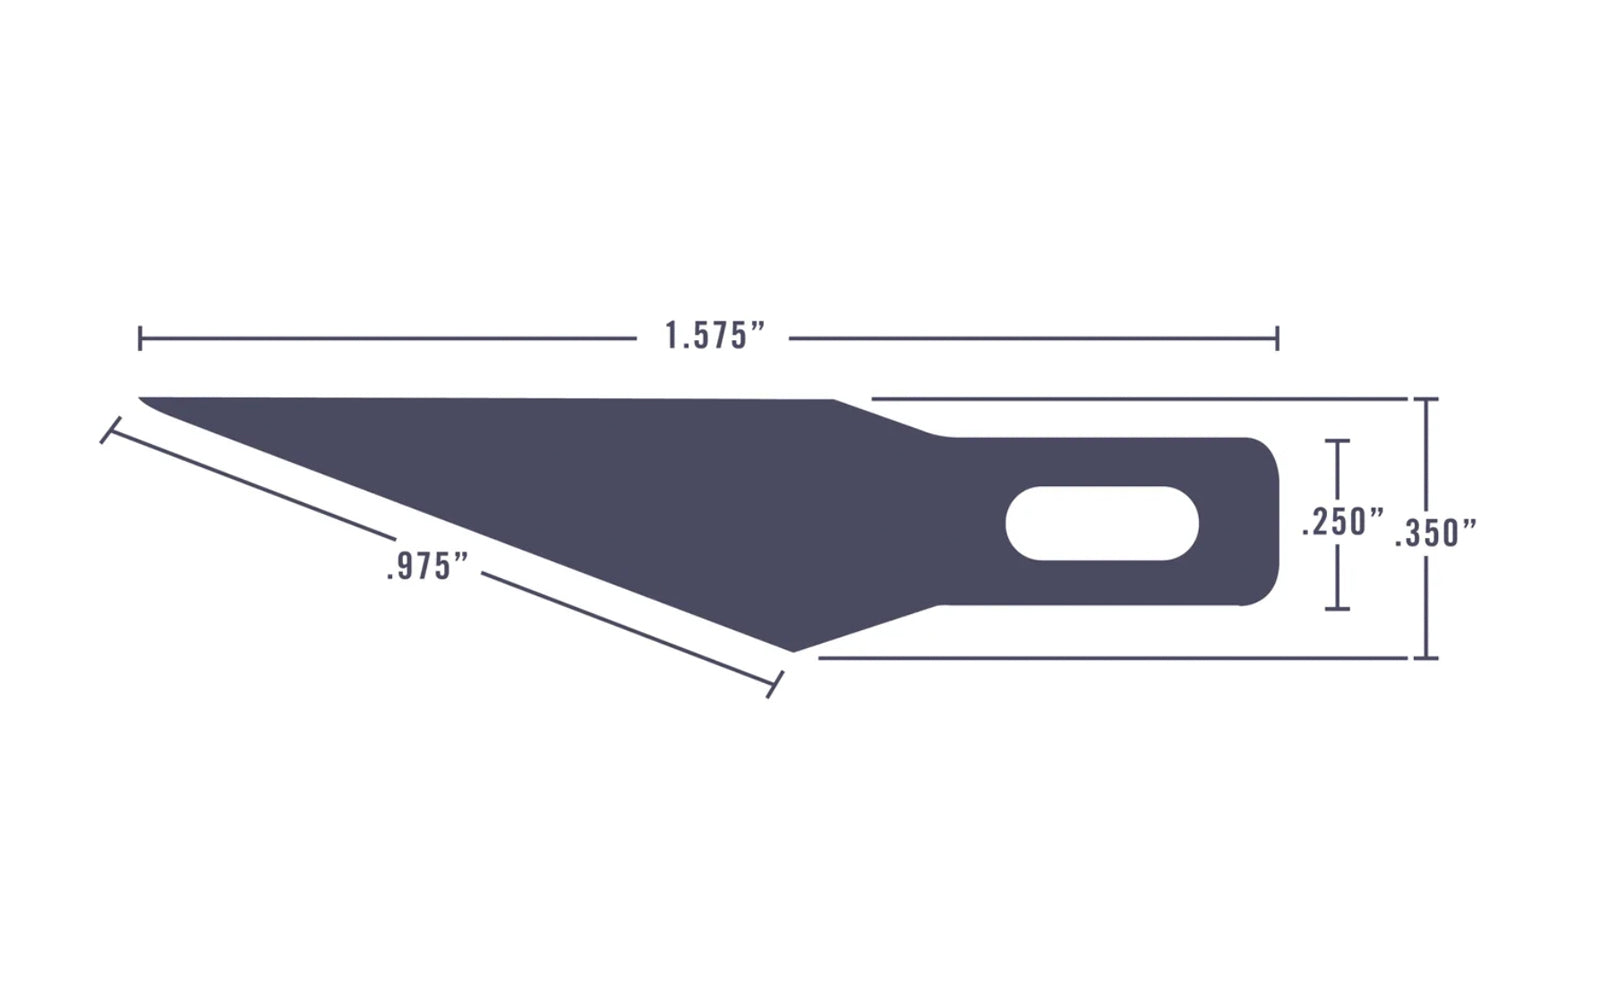 Excel K18 Grip-On Knife